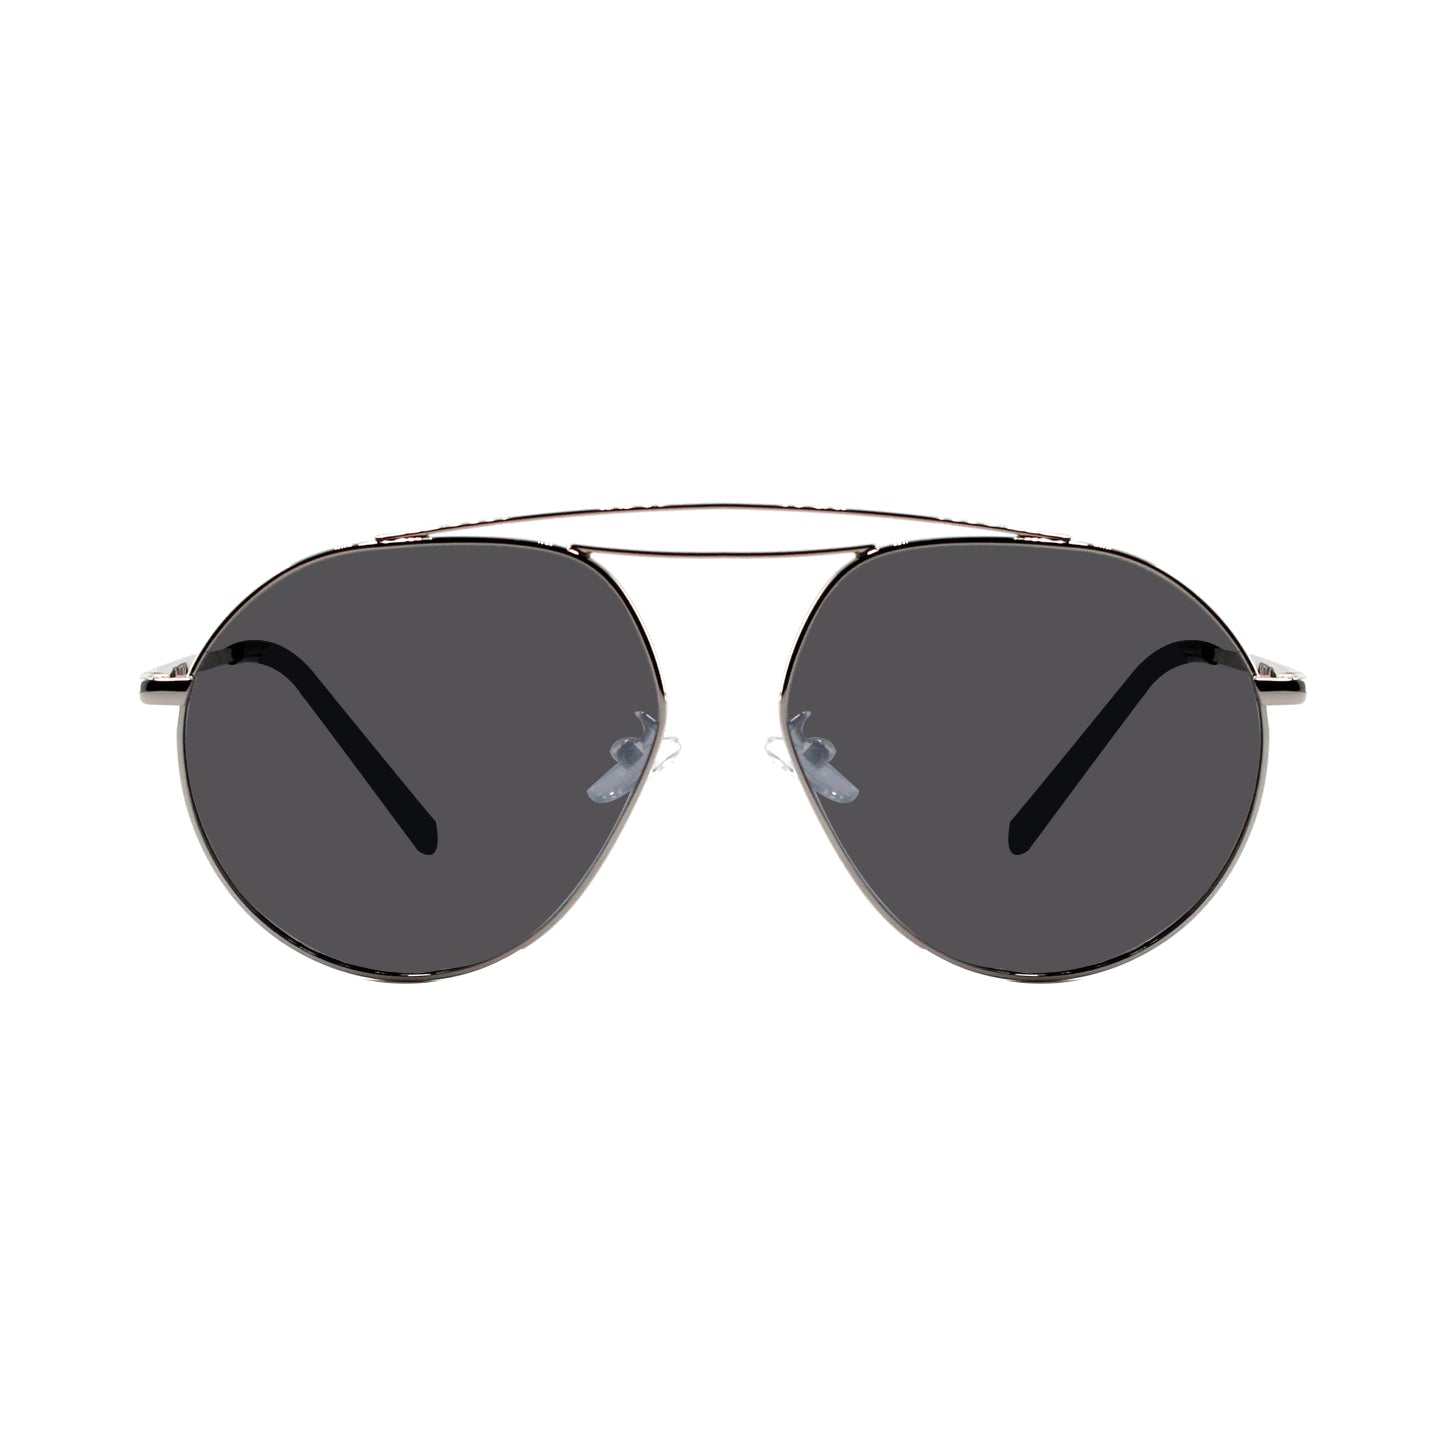 Shades X - Occhiali da sole polarizzati | Modello 7030